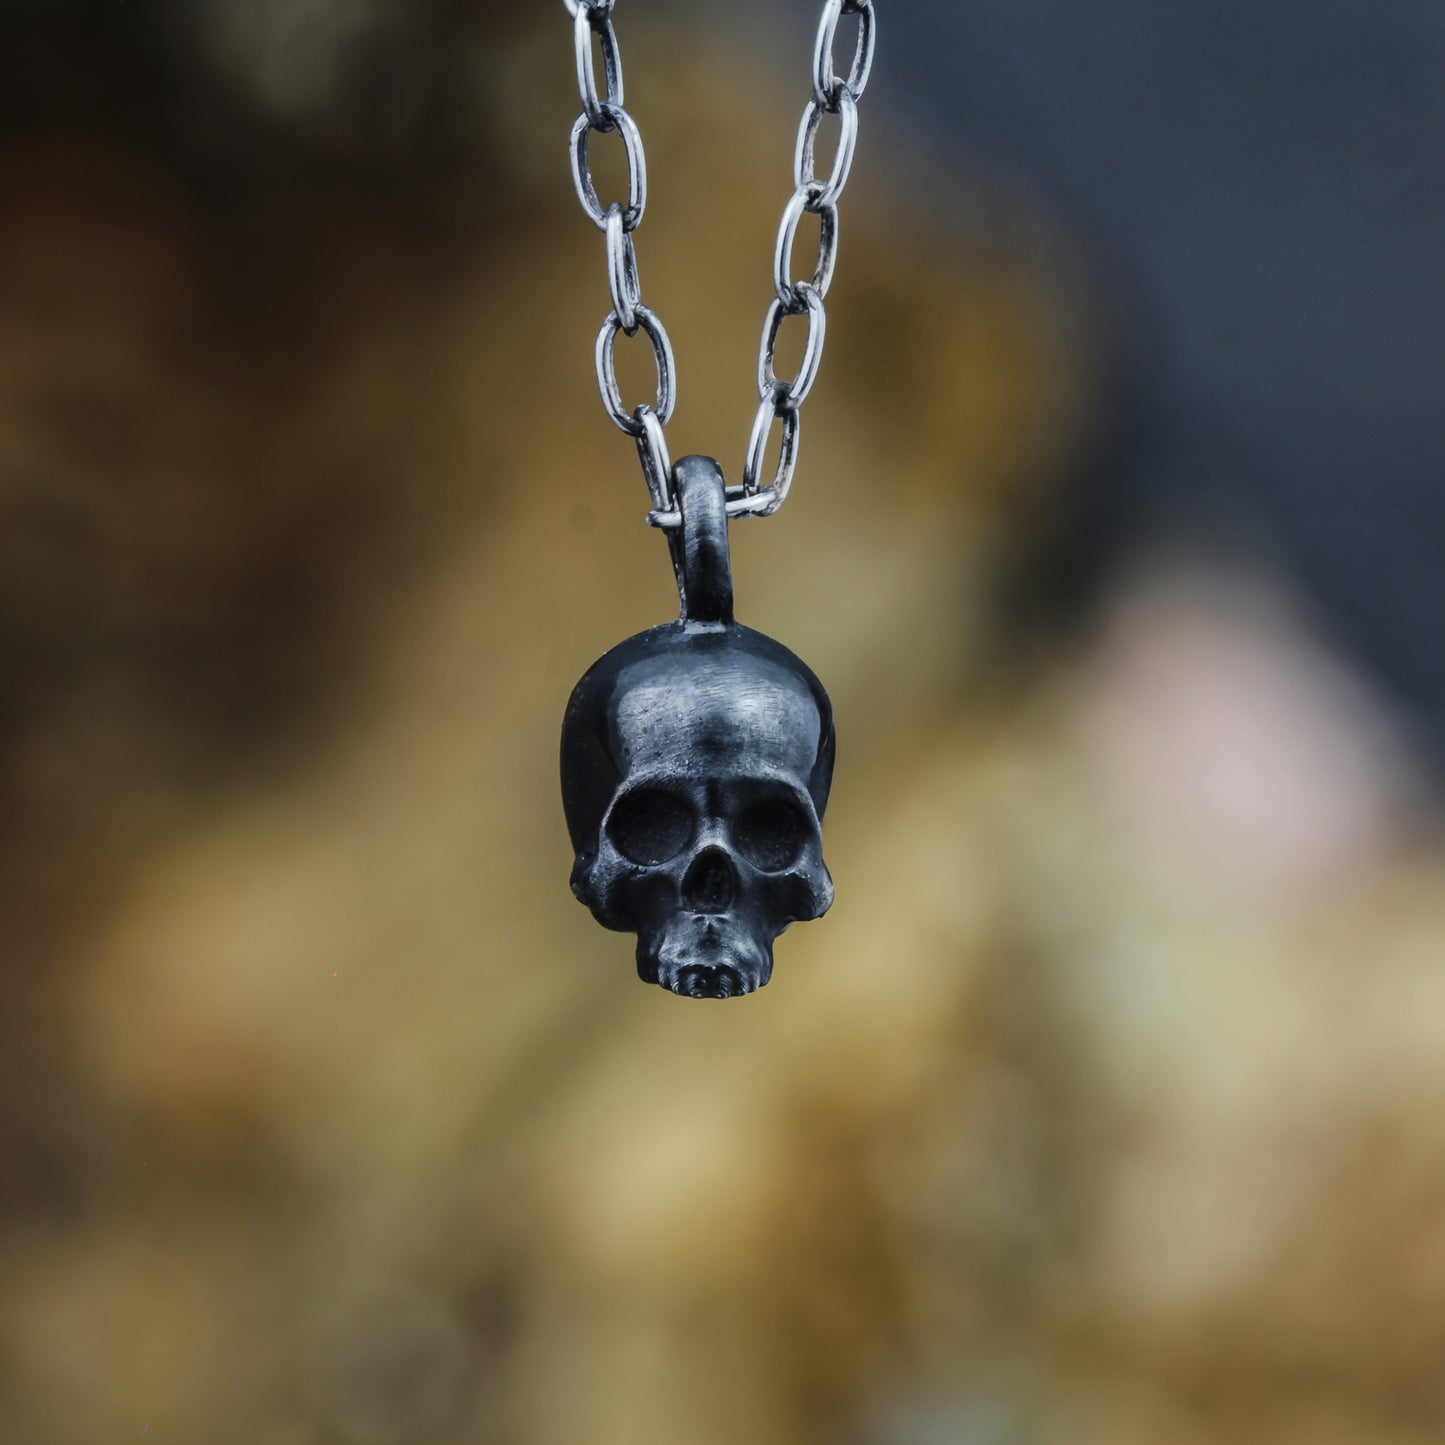 Black skull pendant.